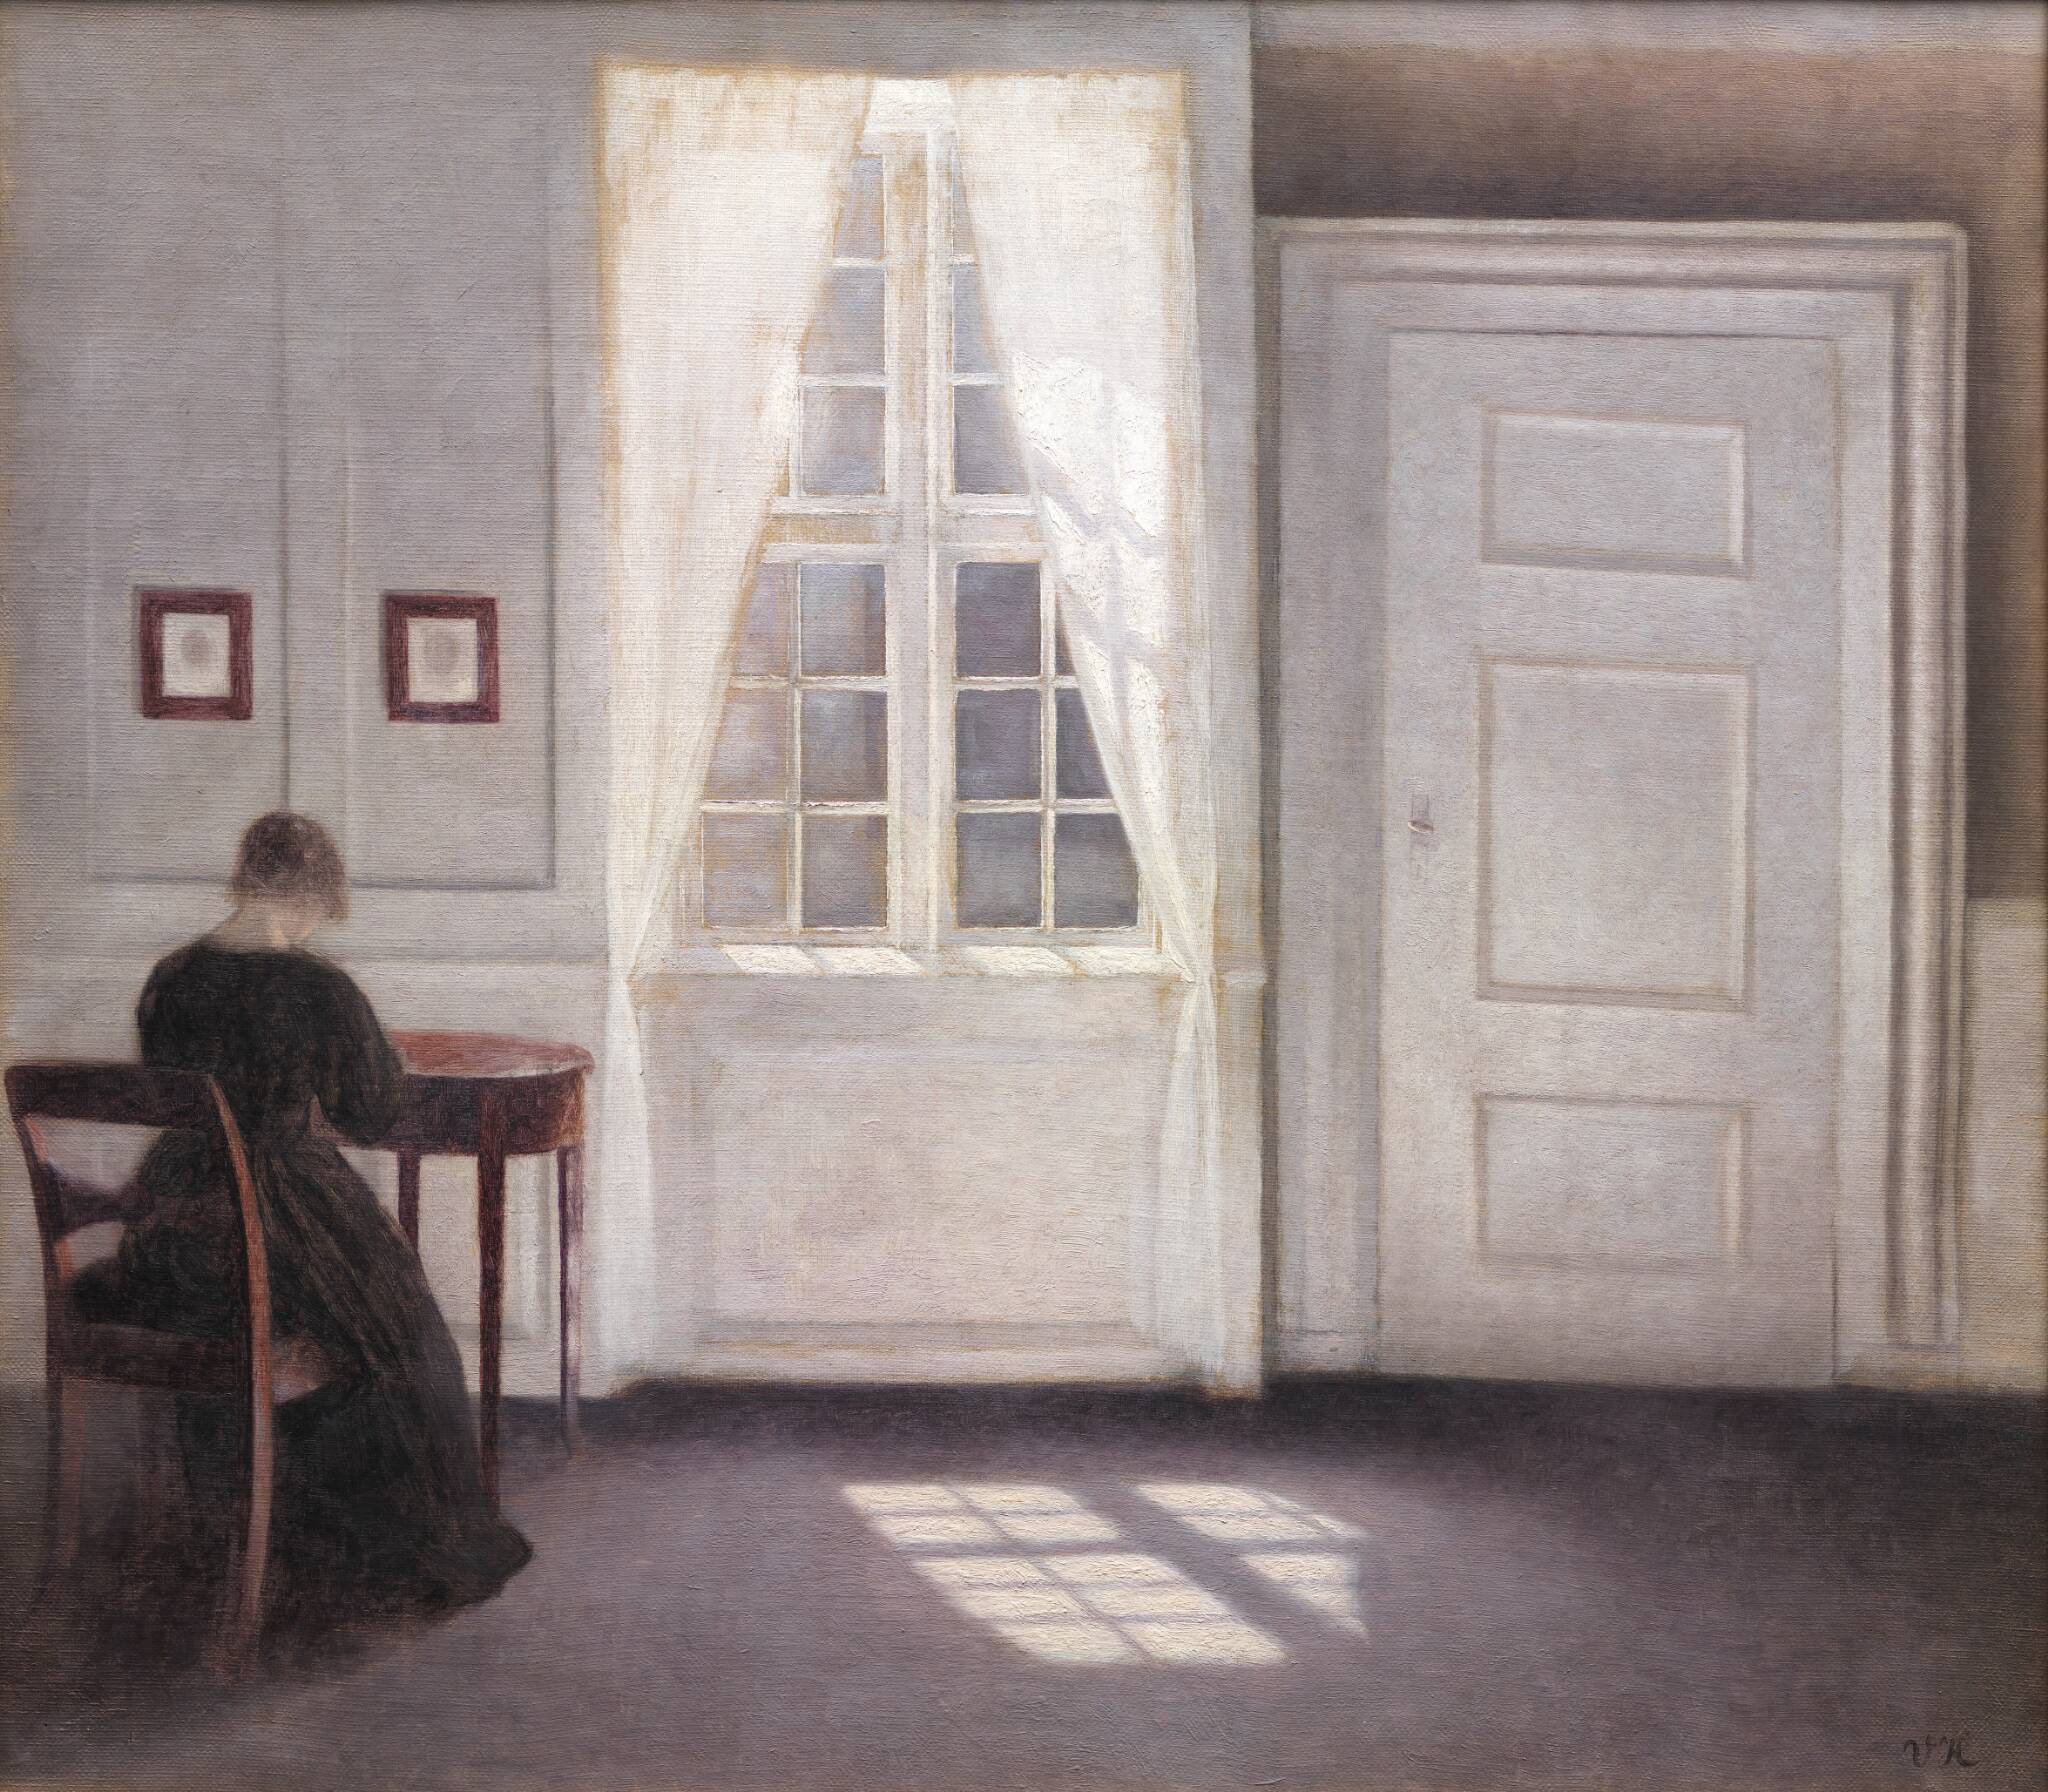 Strandgade-i enteriőr, napfény a padlón by Vilhelm Hammershøi - 1901 - 46,5 x 52 cm 